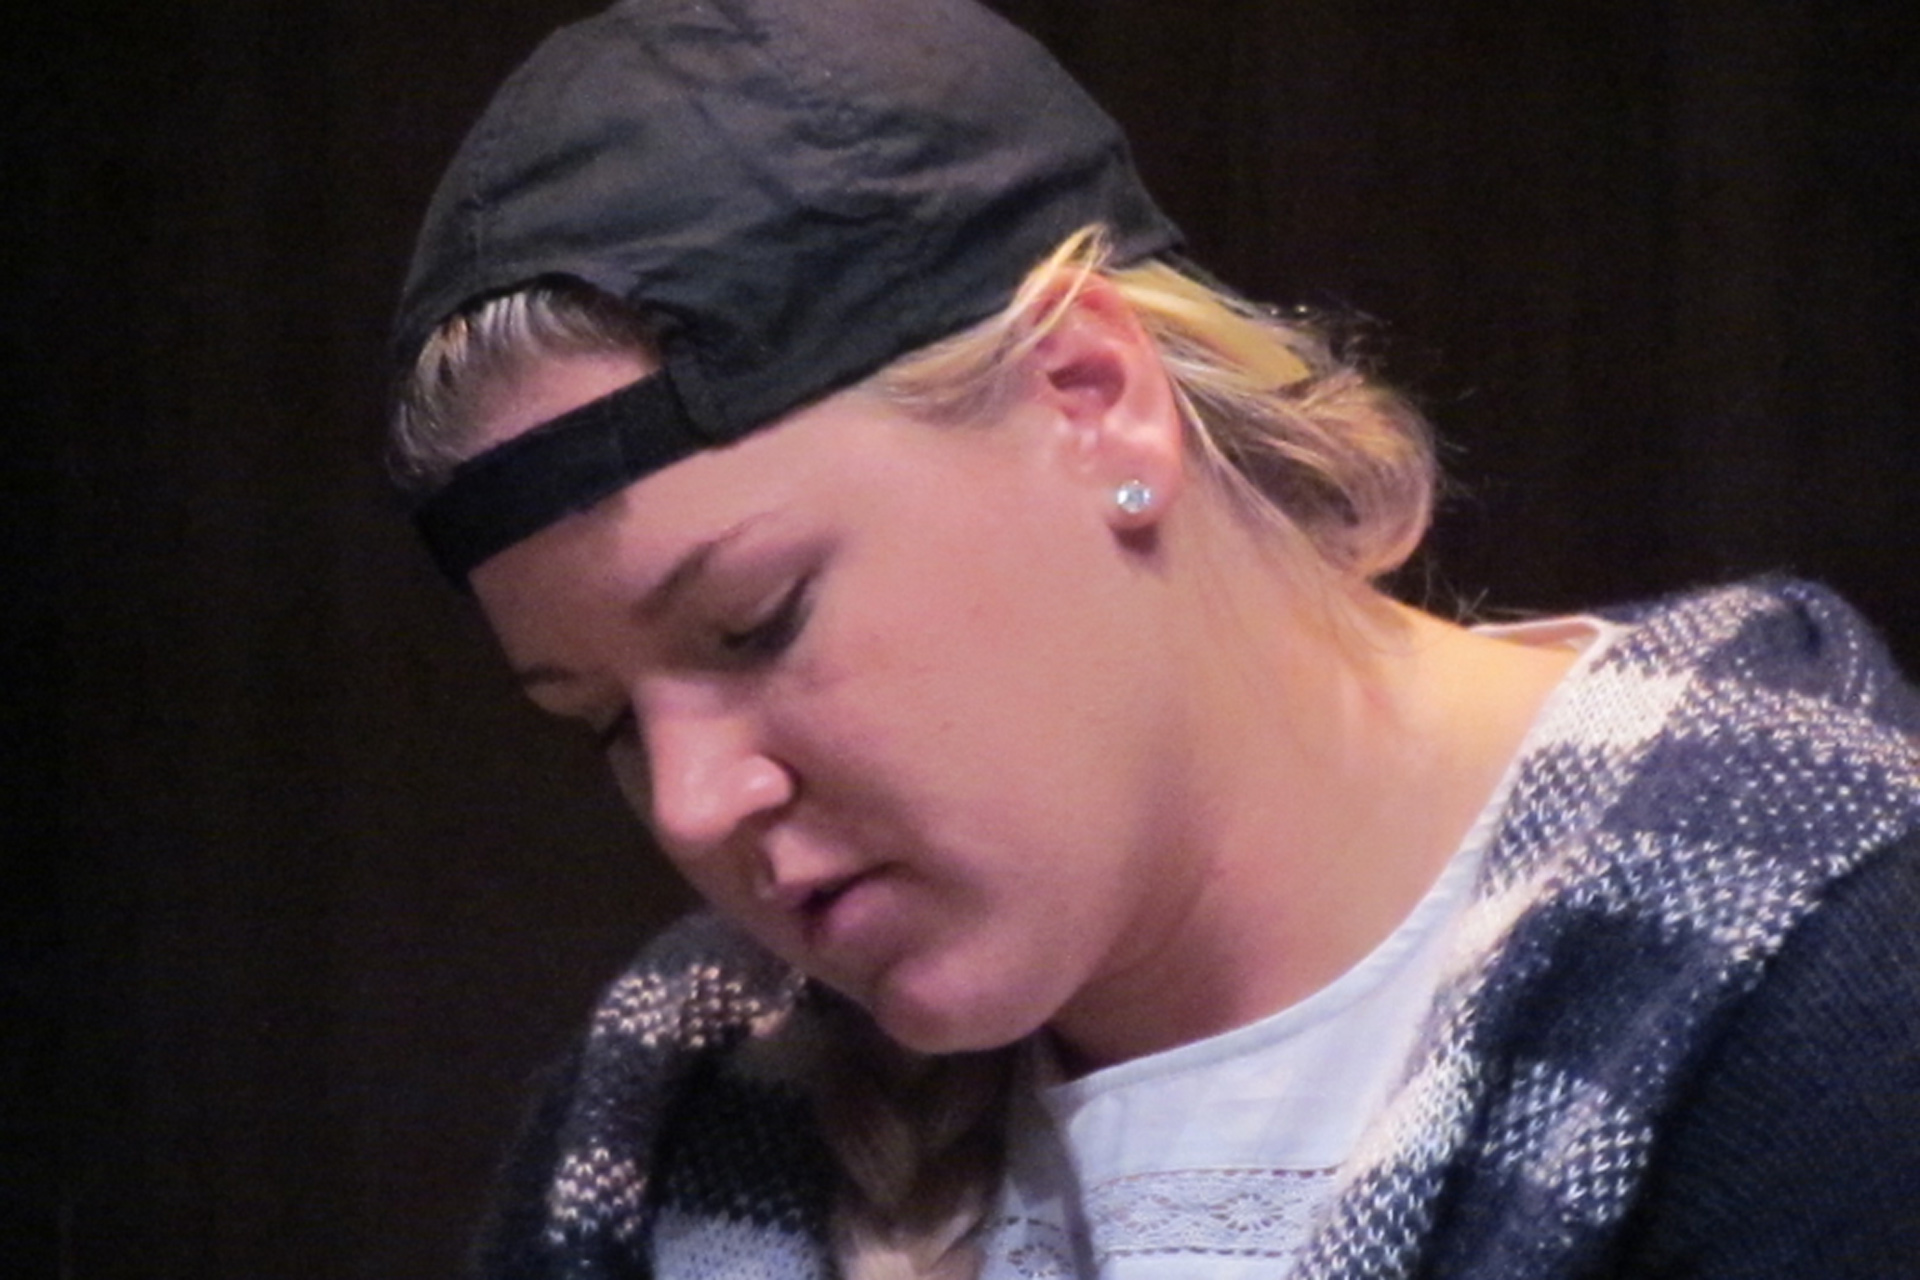 Close up of actress wearing baseball cap